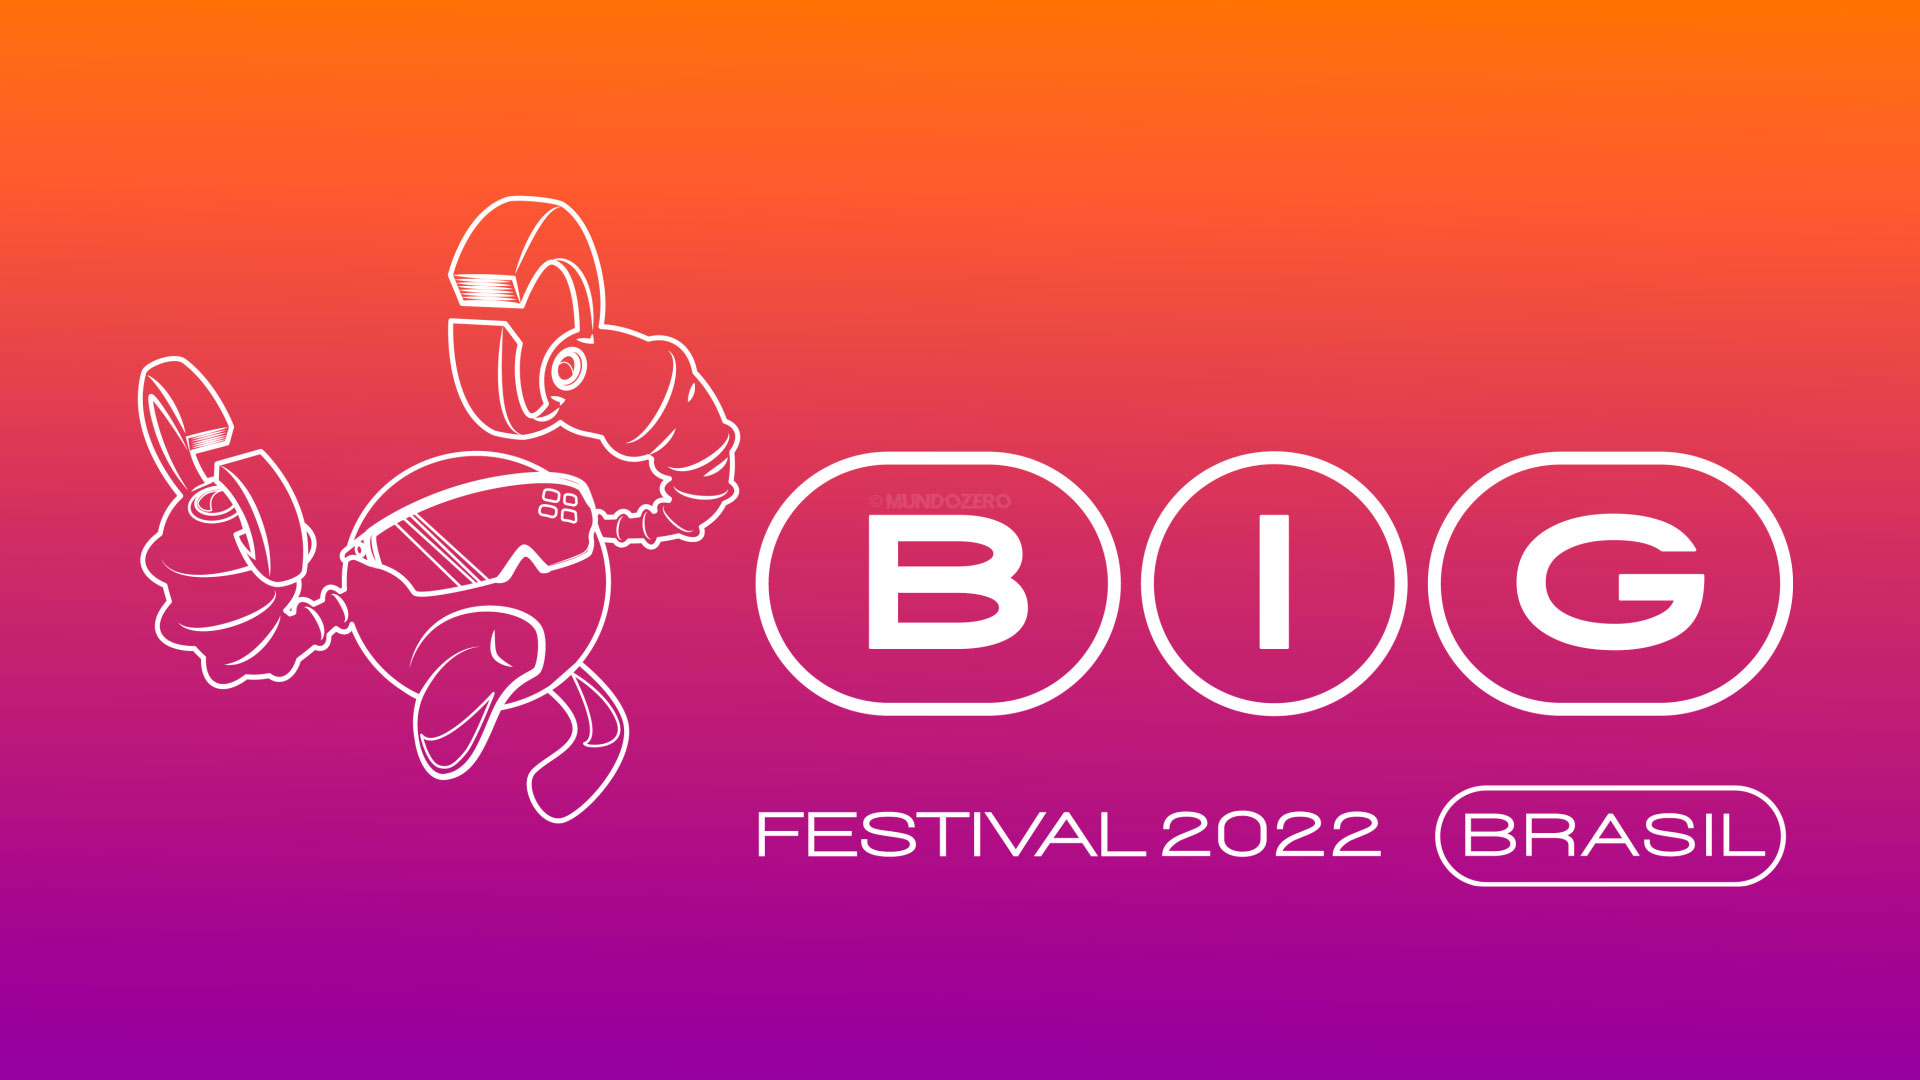 BIG Festival e Twitch anunciam o maior encontro de streamers no